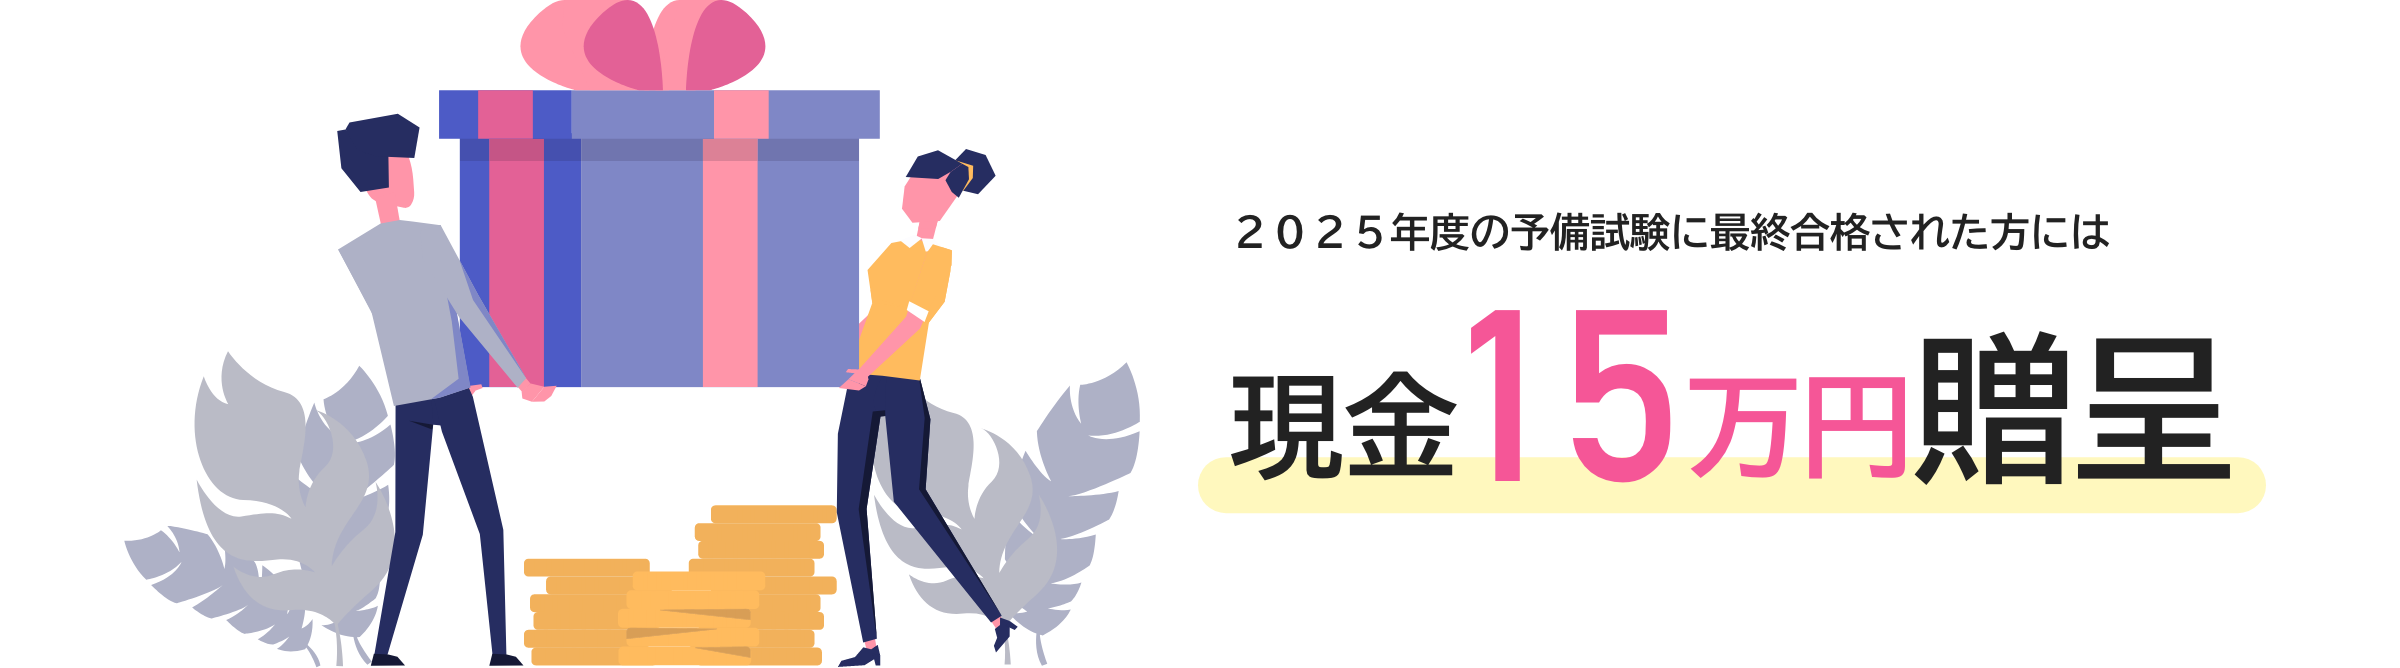 2025年度の予備試験に最終合格された方には現金15万円贈呈